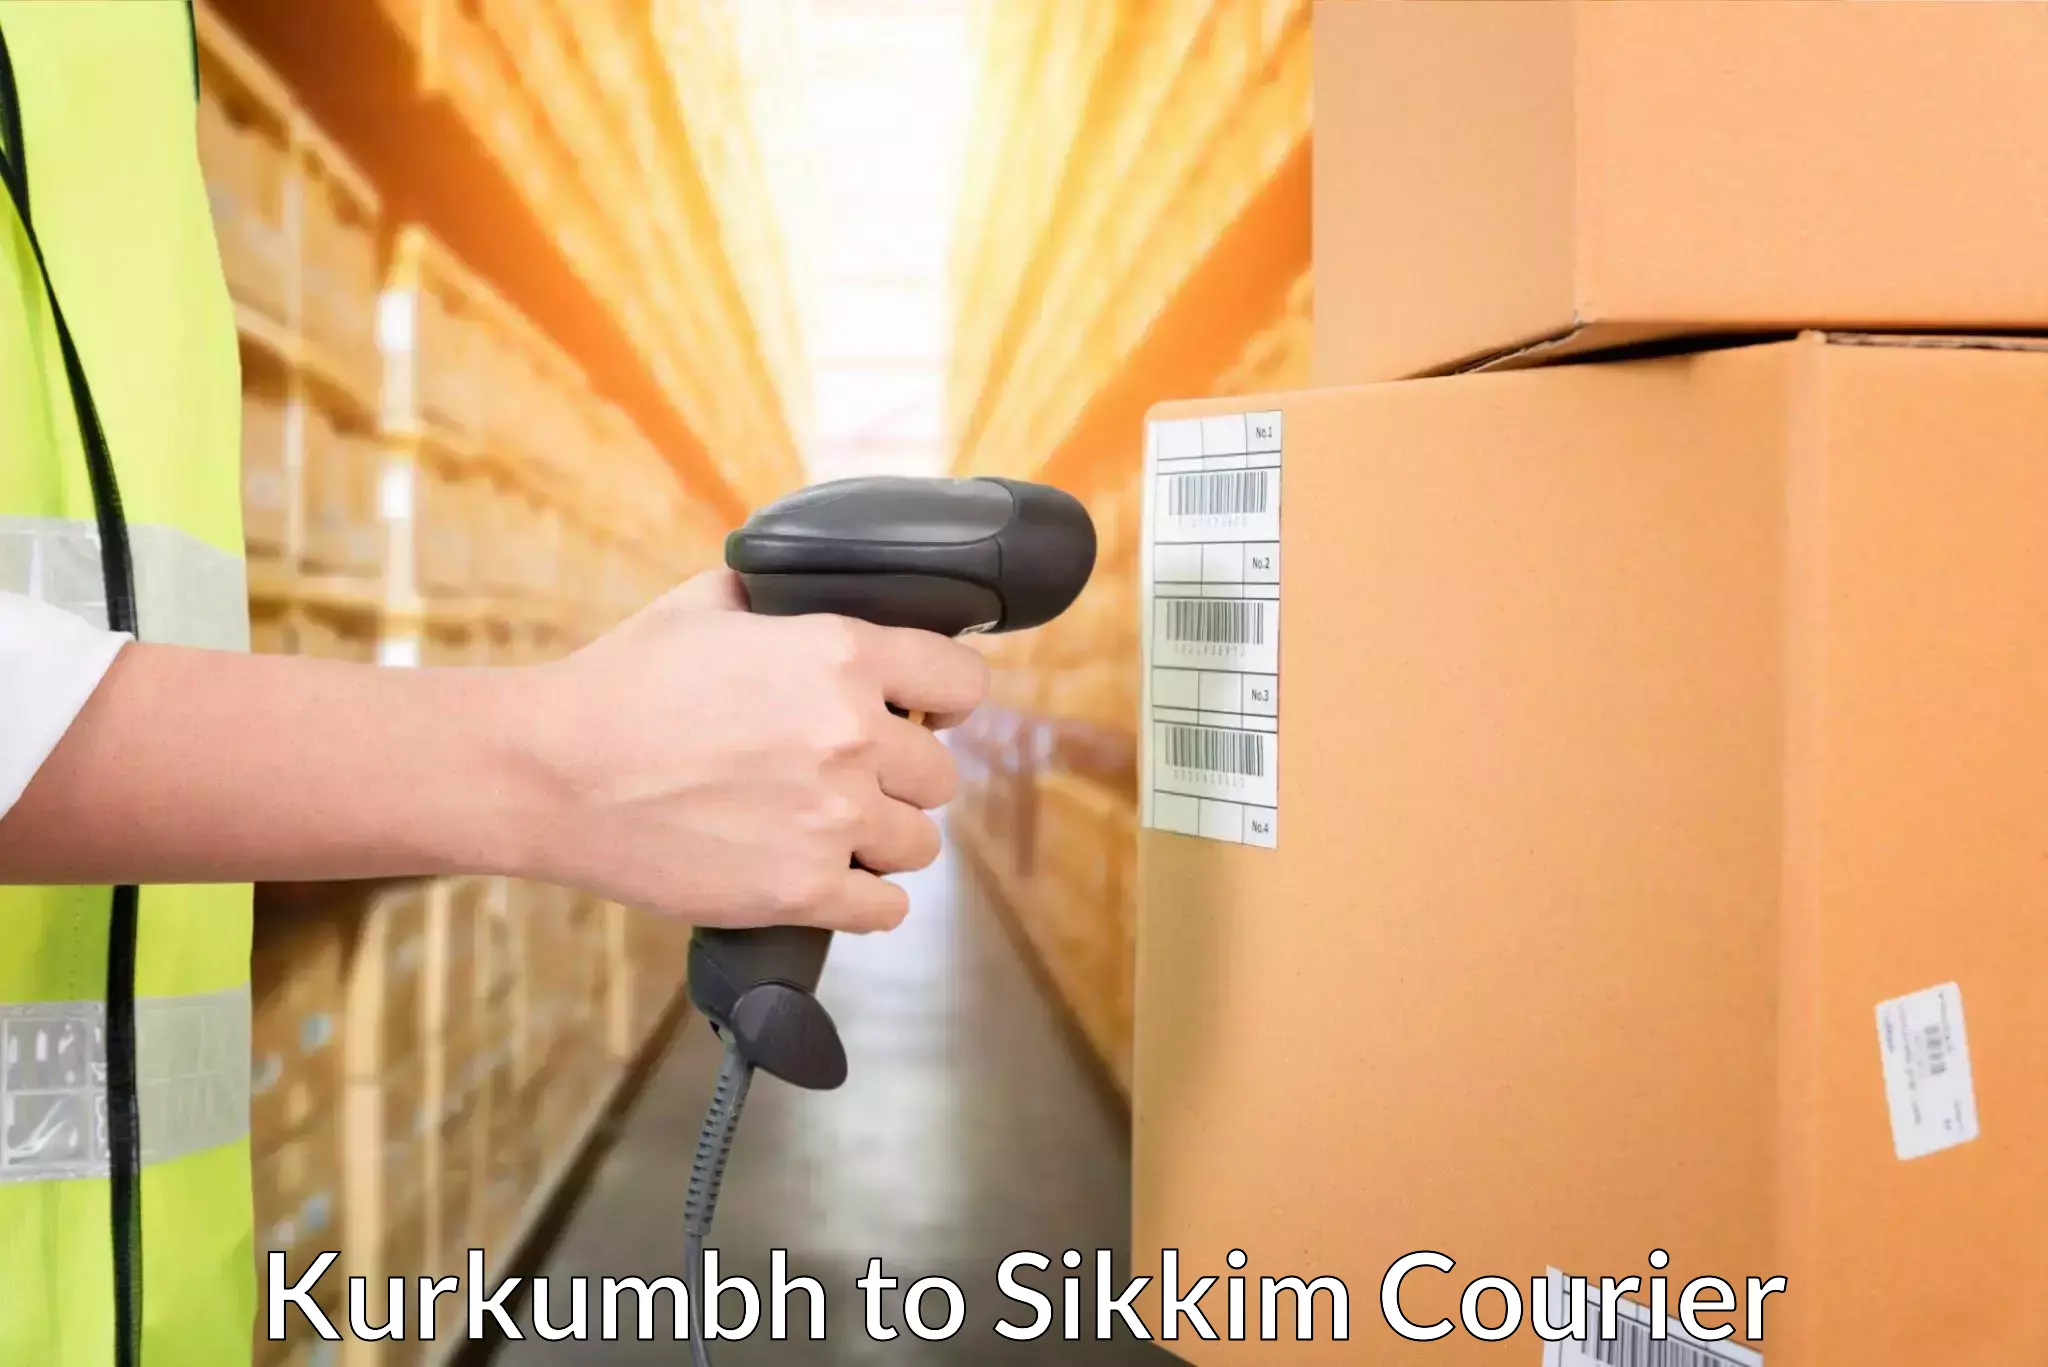 Supply chain delivery Kurkumbh to Pelling